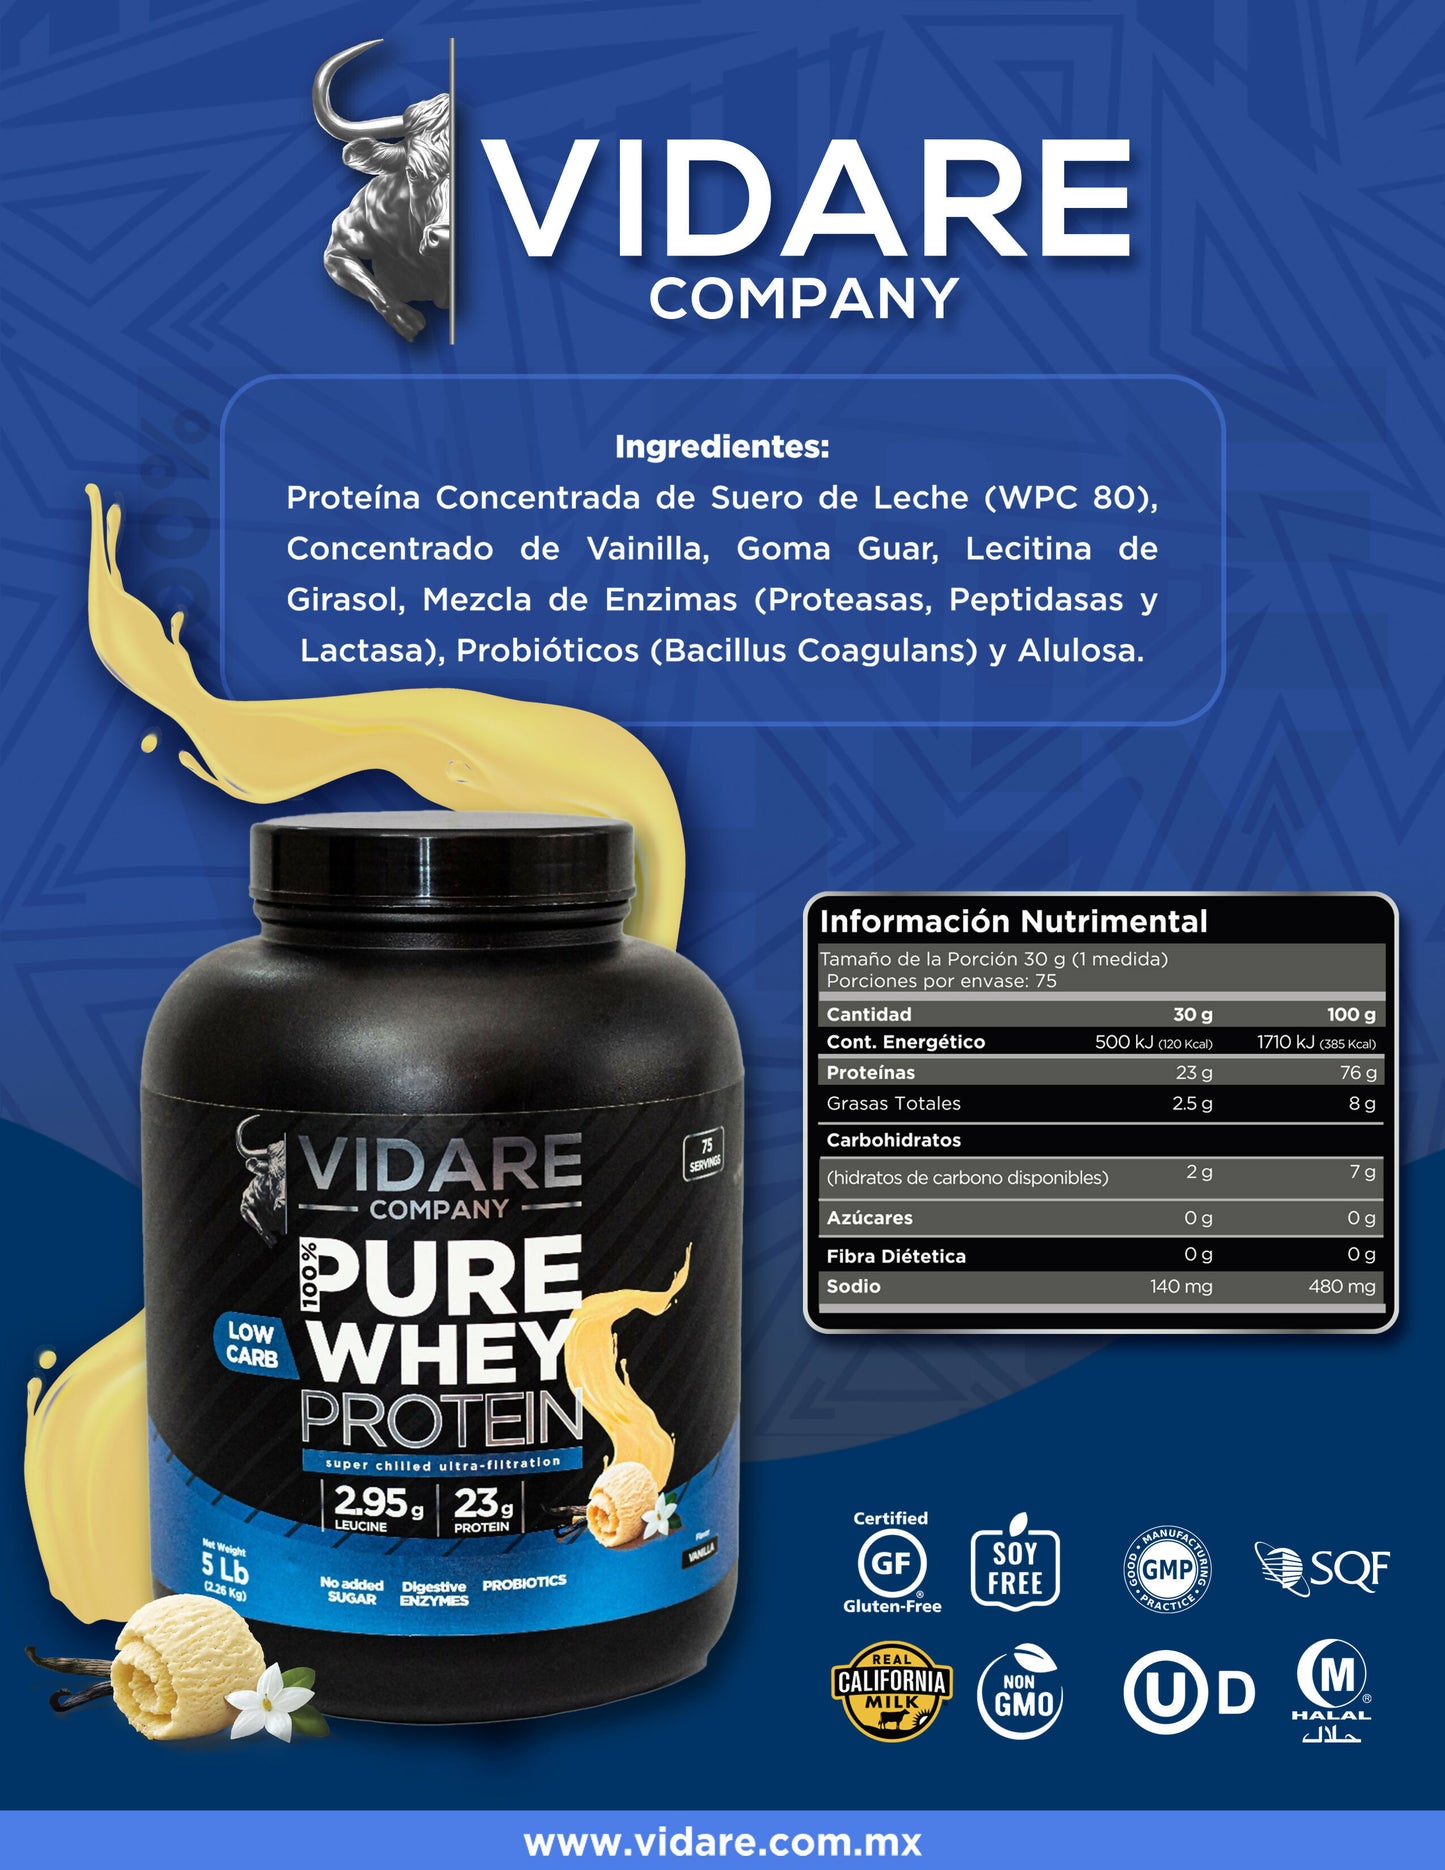 Vidare Company 100% Pure Whey Protein 5Lb